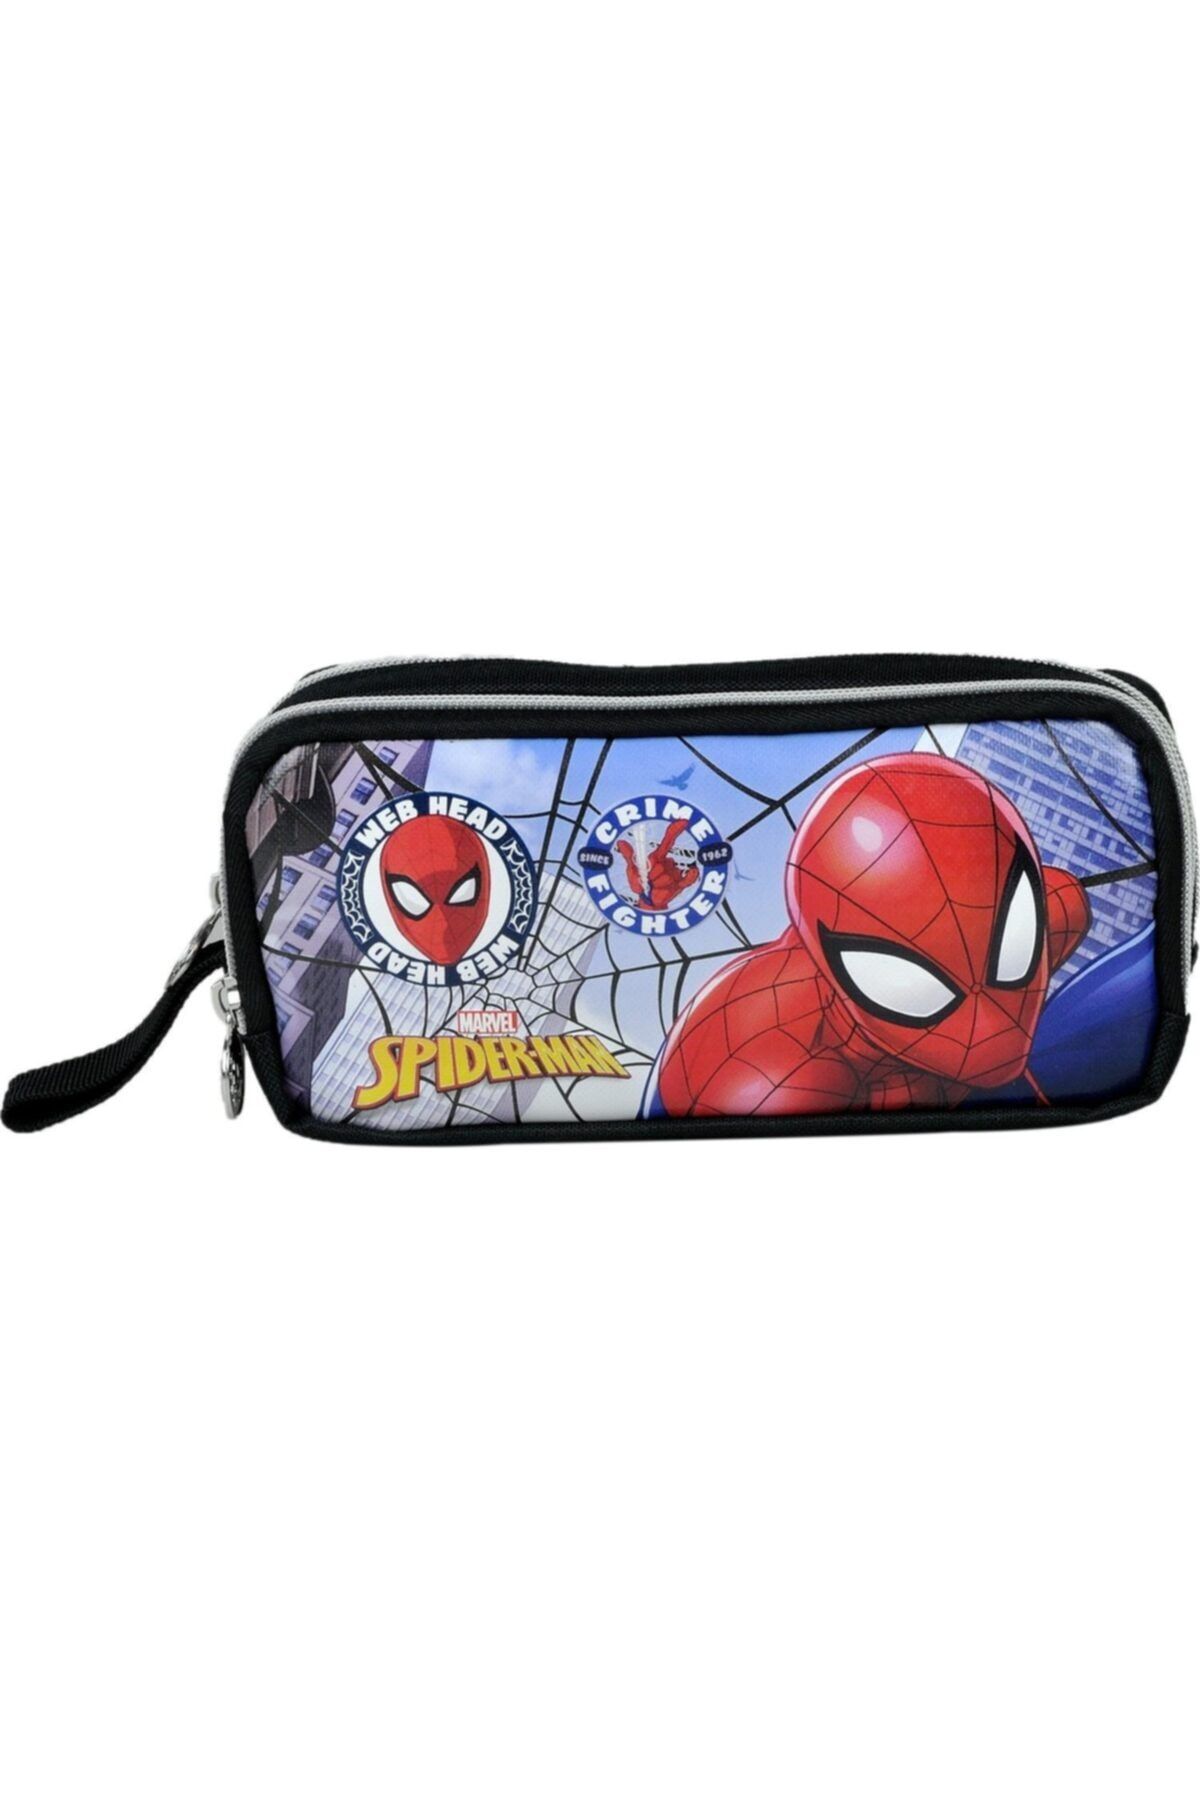 Hakan Çanta Spiderman Lianslı Kalem Çantası - Çift Fermuarlı Kalemlik